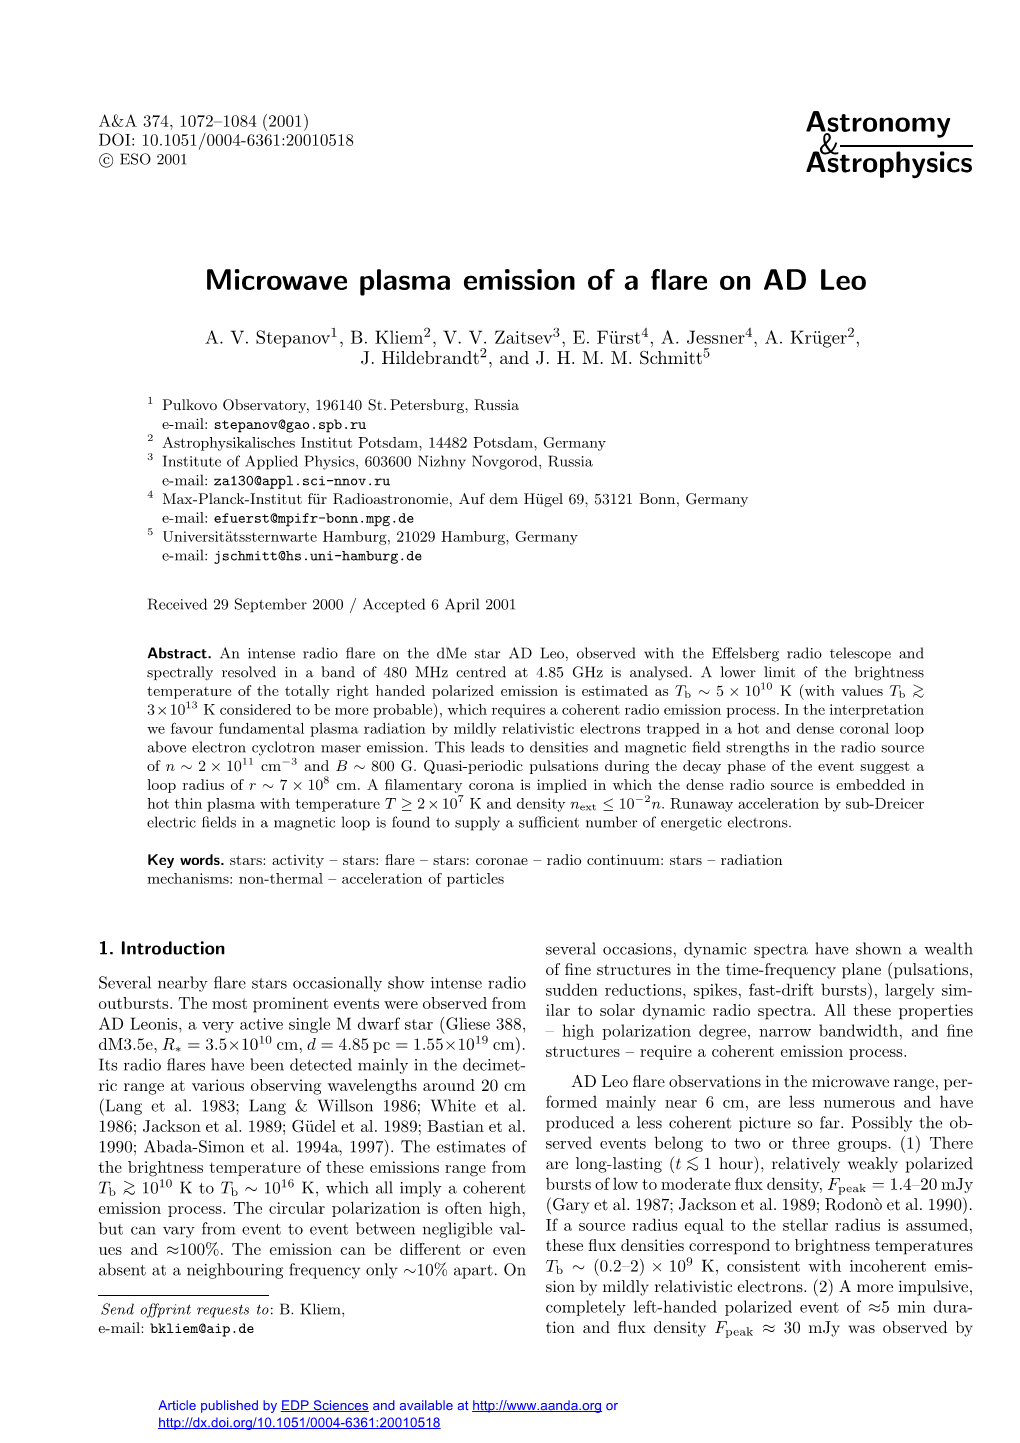 Microwave Plasma Emission of a Flare on AD